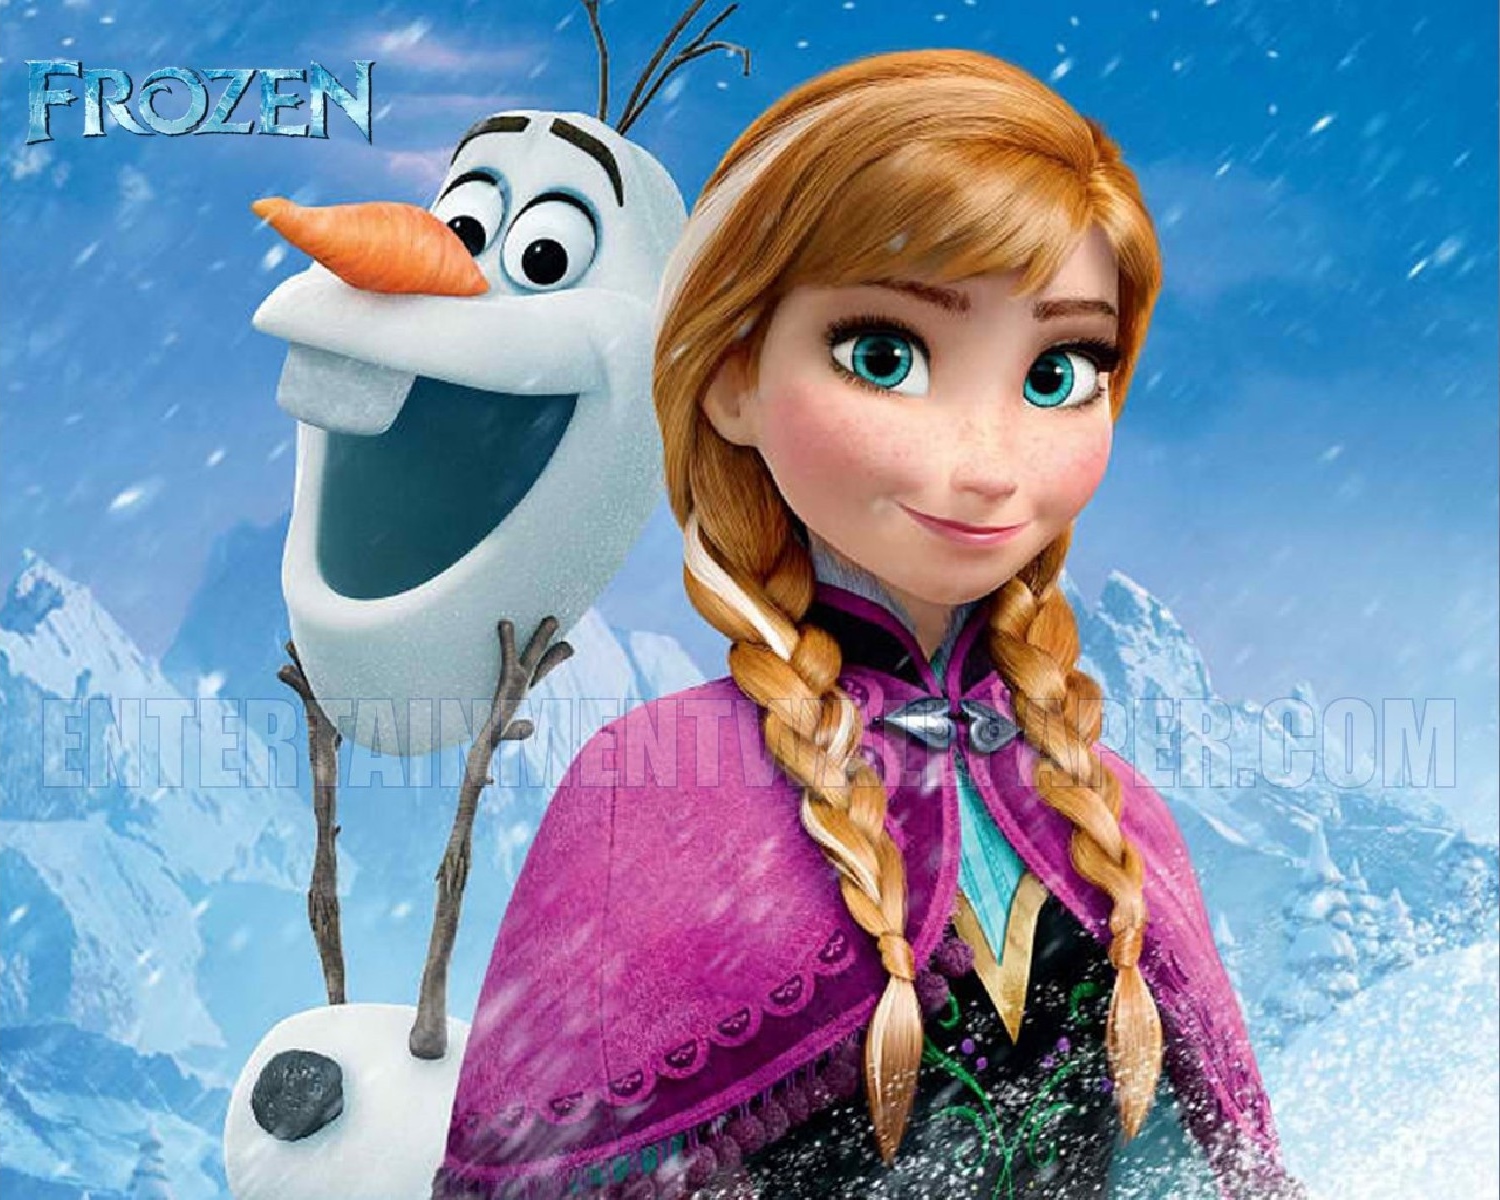 Anna and Olaf Wallpaper - Frozen Wallpaper (37370225) - Fanpop